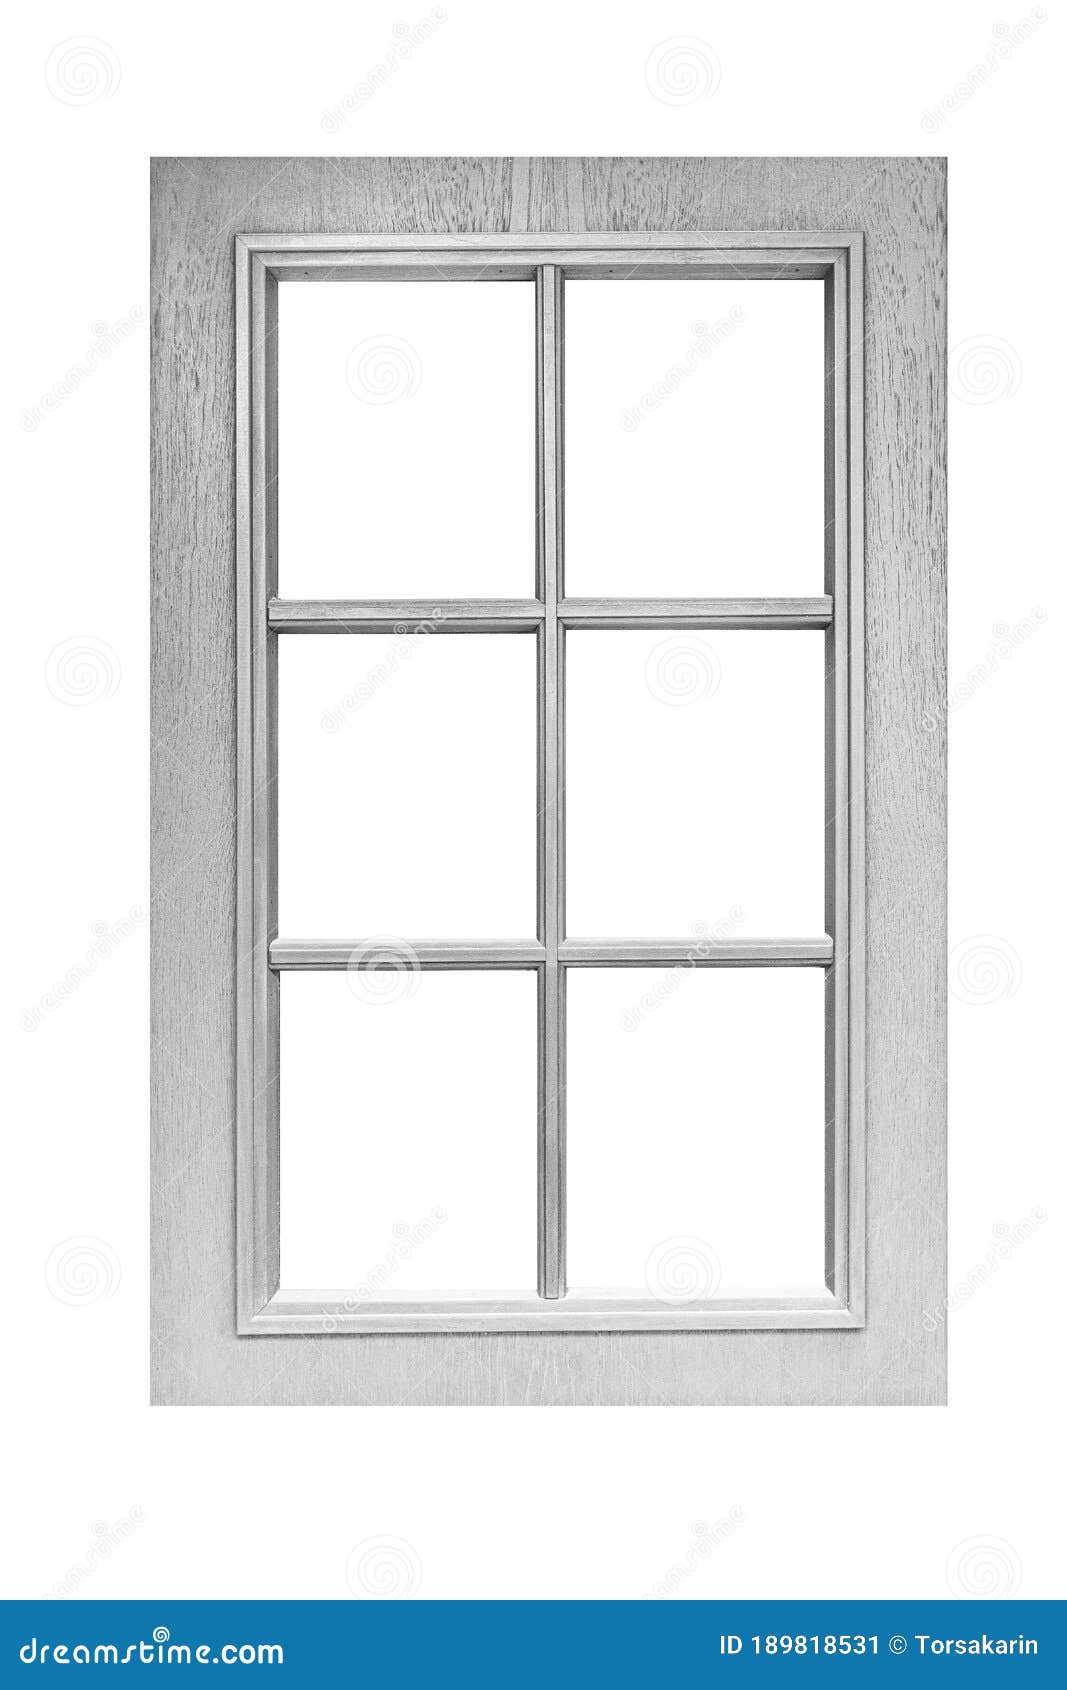 White Wood Window Frame Isolated Stock Image - Image of frame, double ...